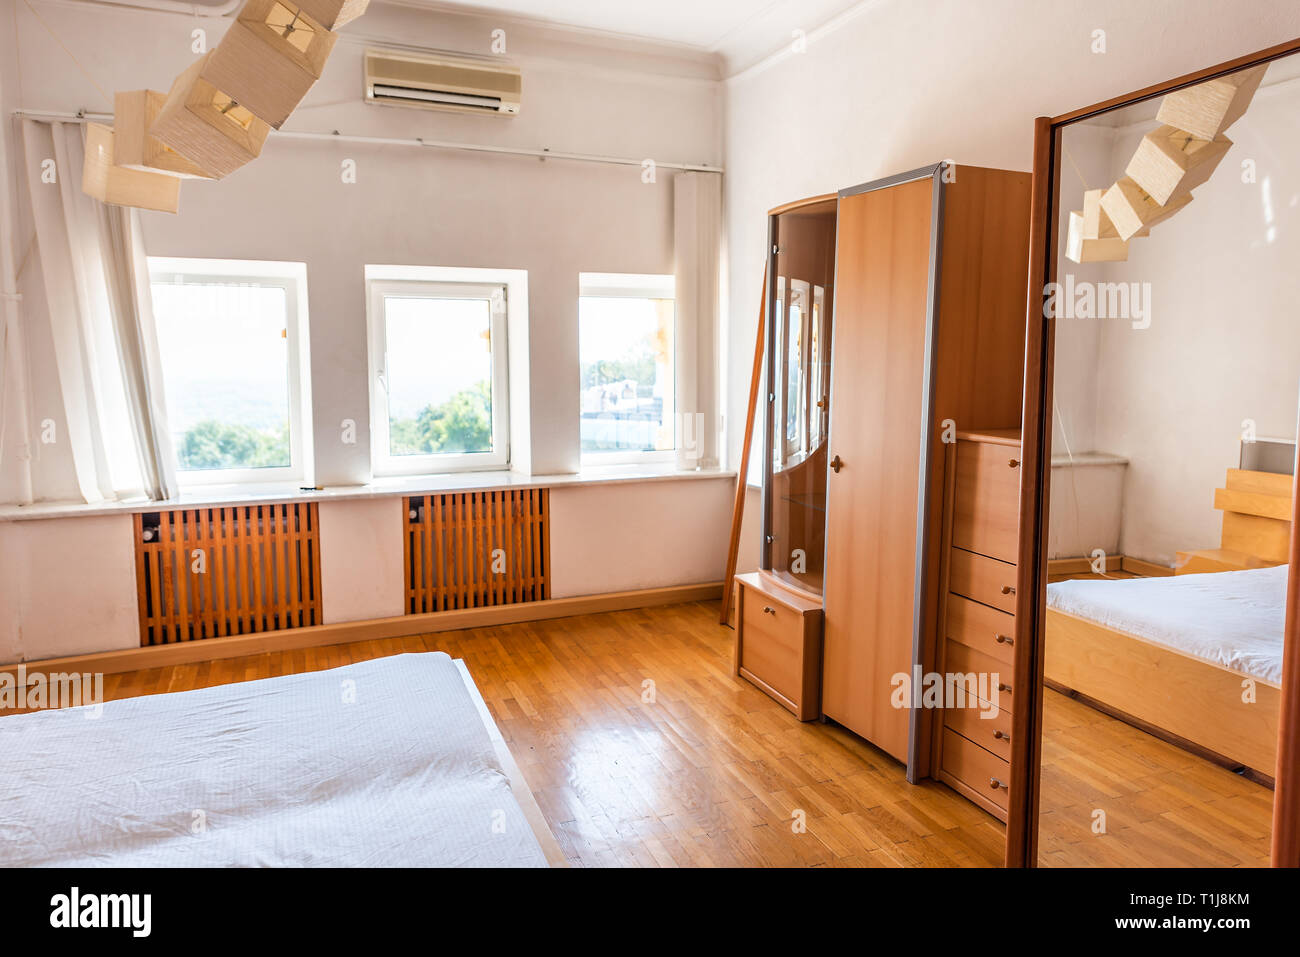 Nouveau lit blanc en bois minimaliste simple armoire penderie armoire en bois ou d'une armoire dans la chambre accueil chambre ou appartement Banque D'Images